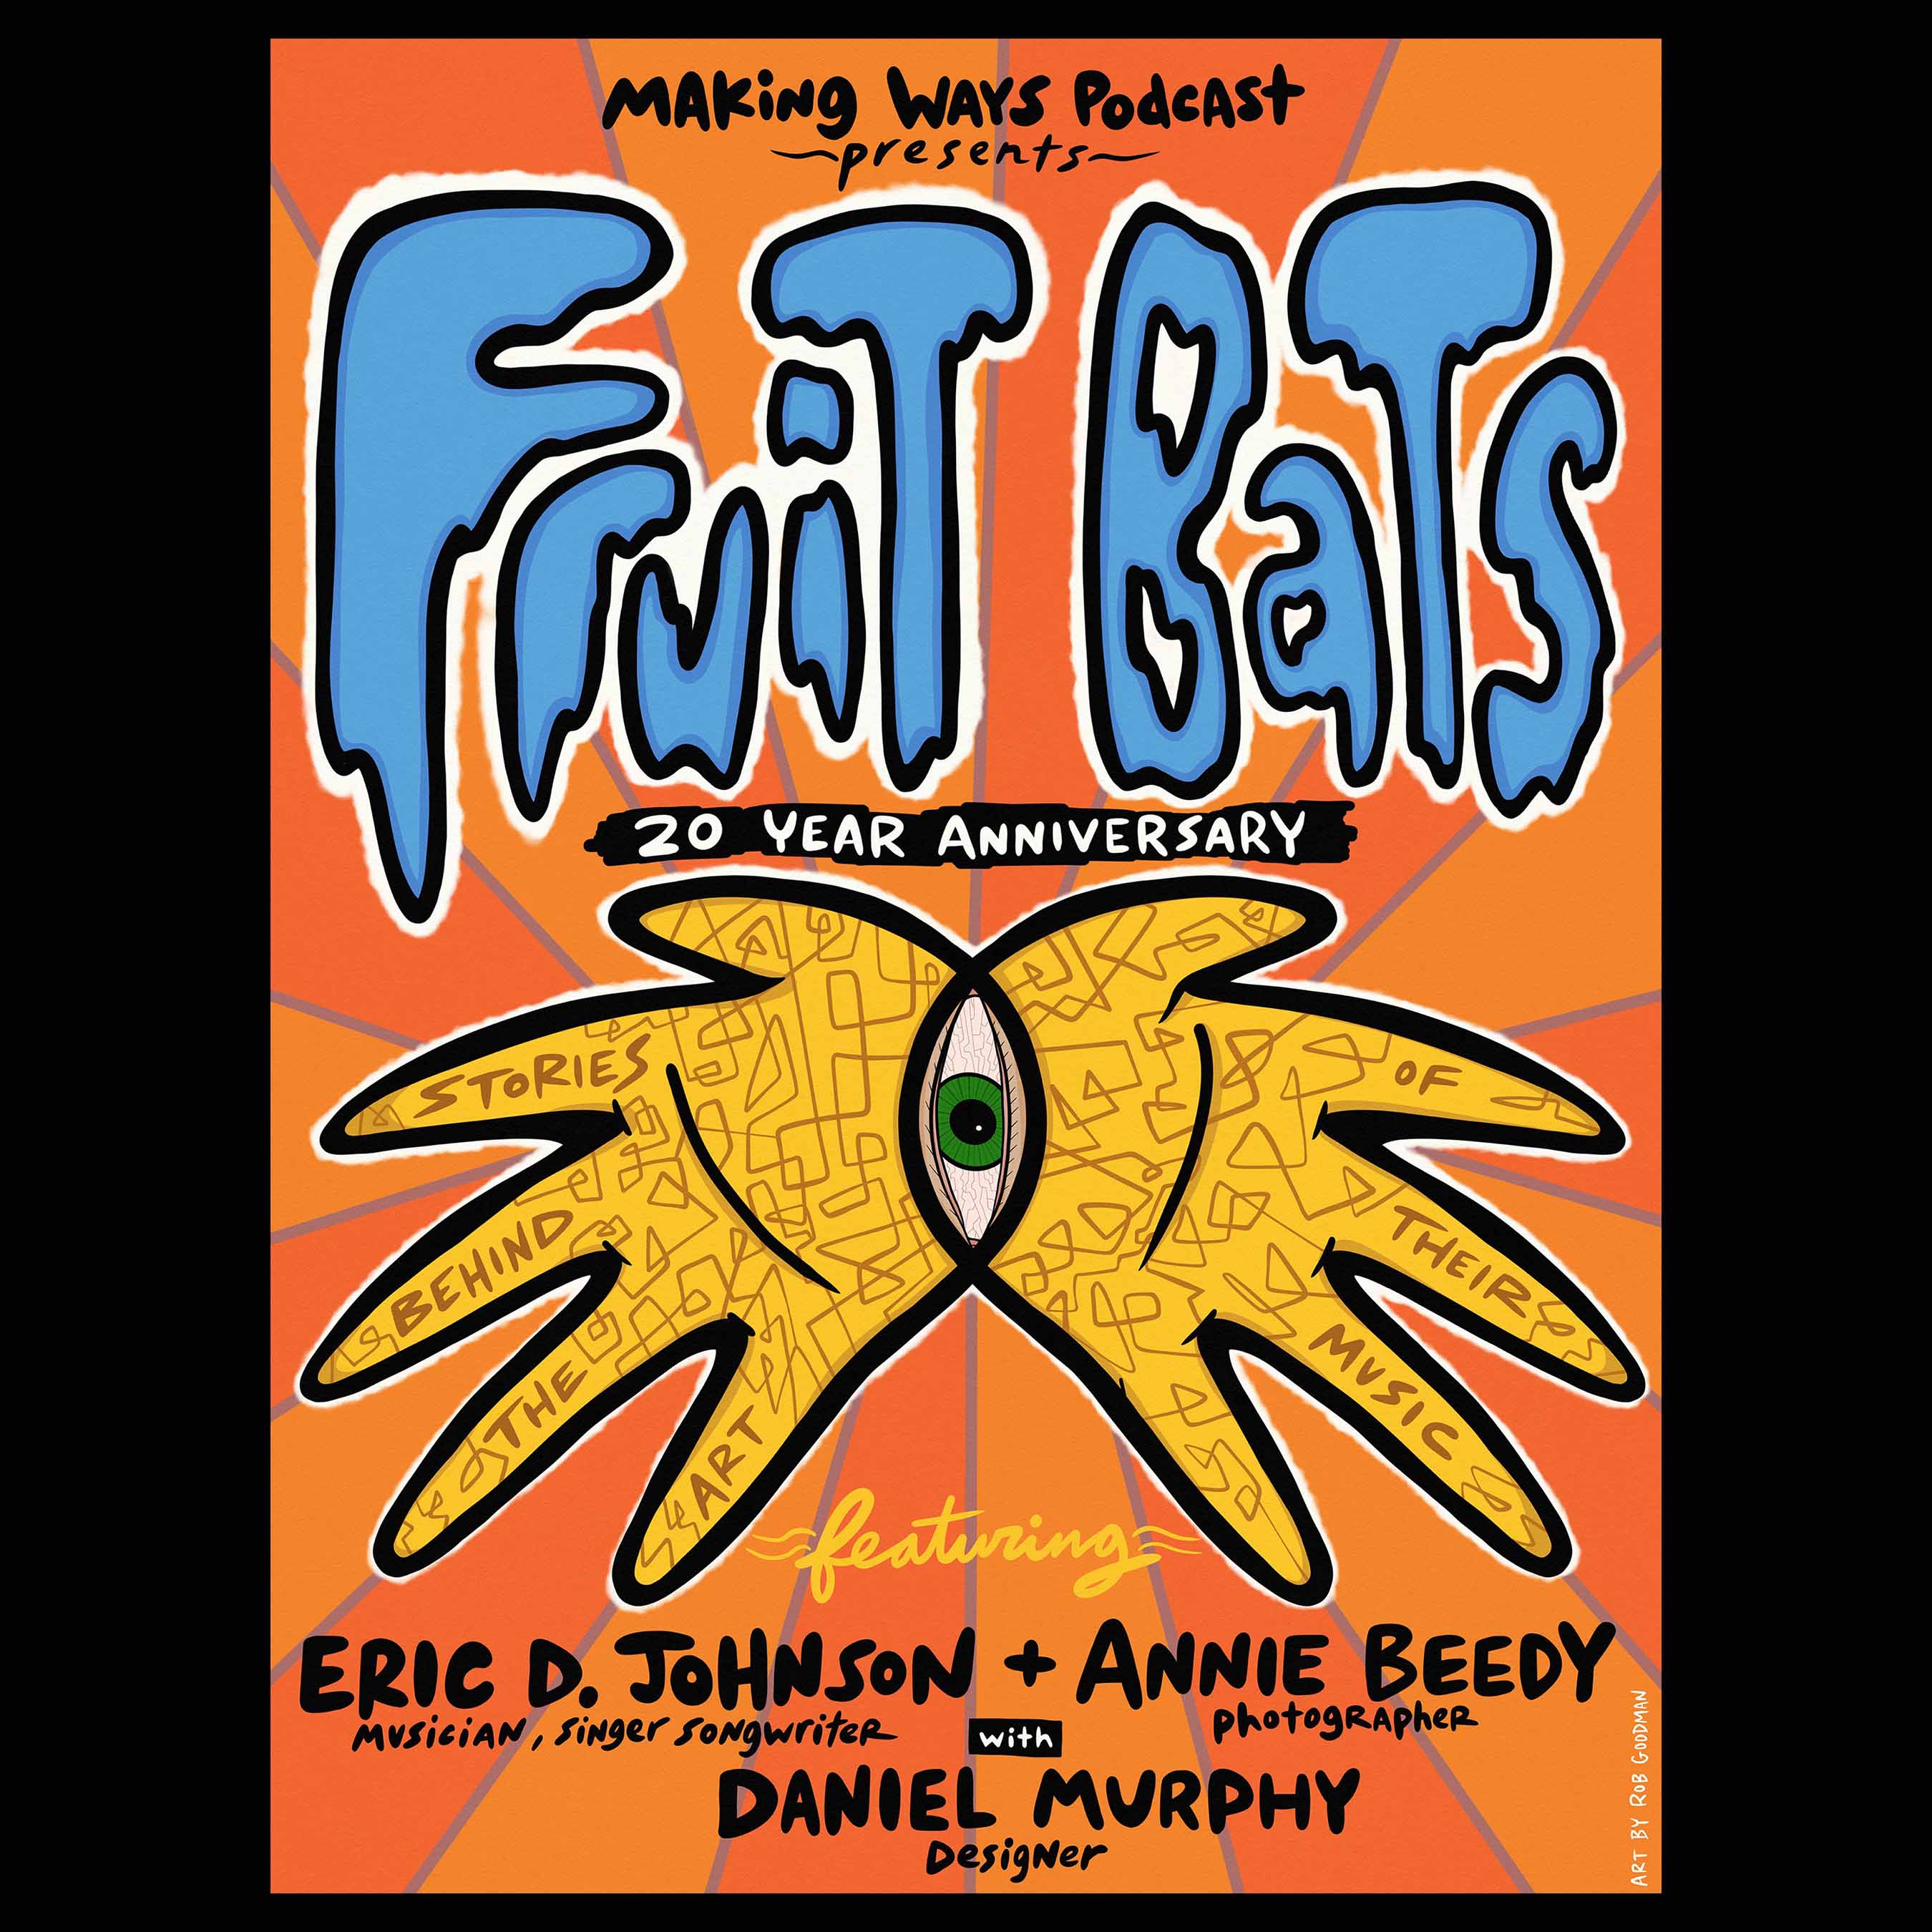 The Art of Fruit Bats: Eric D. Johnson, Annie Beedy, and Daniel Murphy